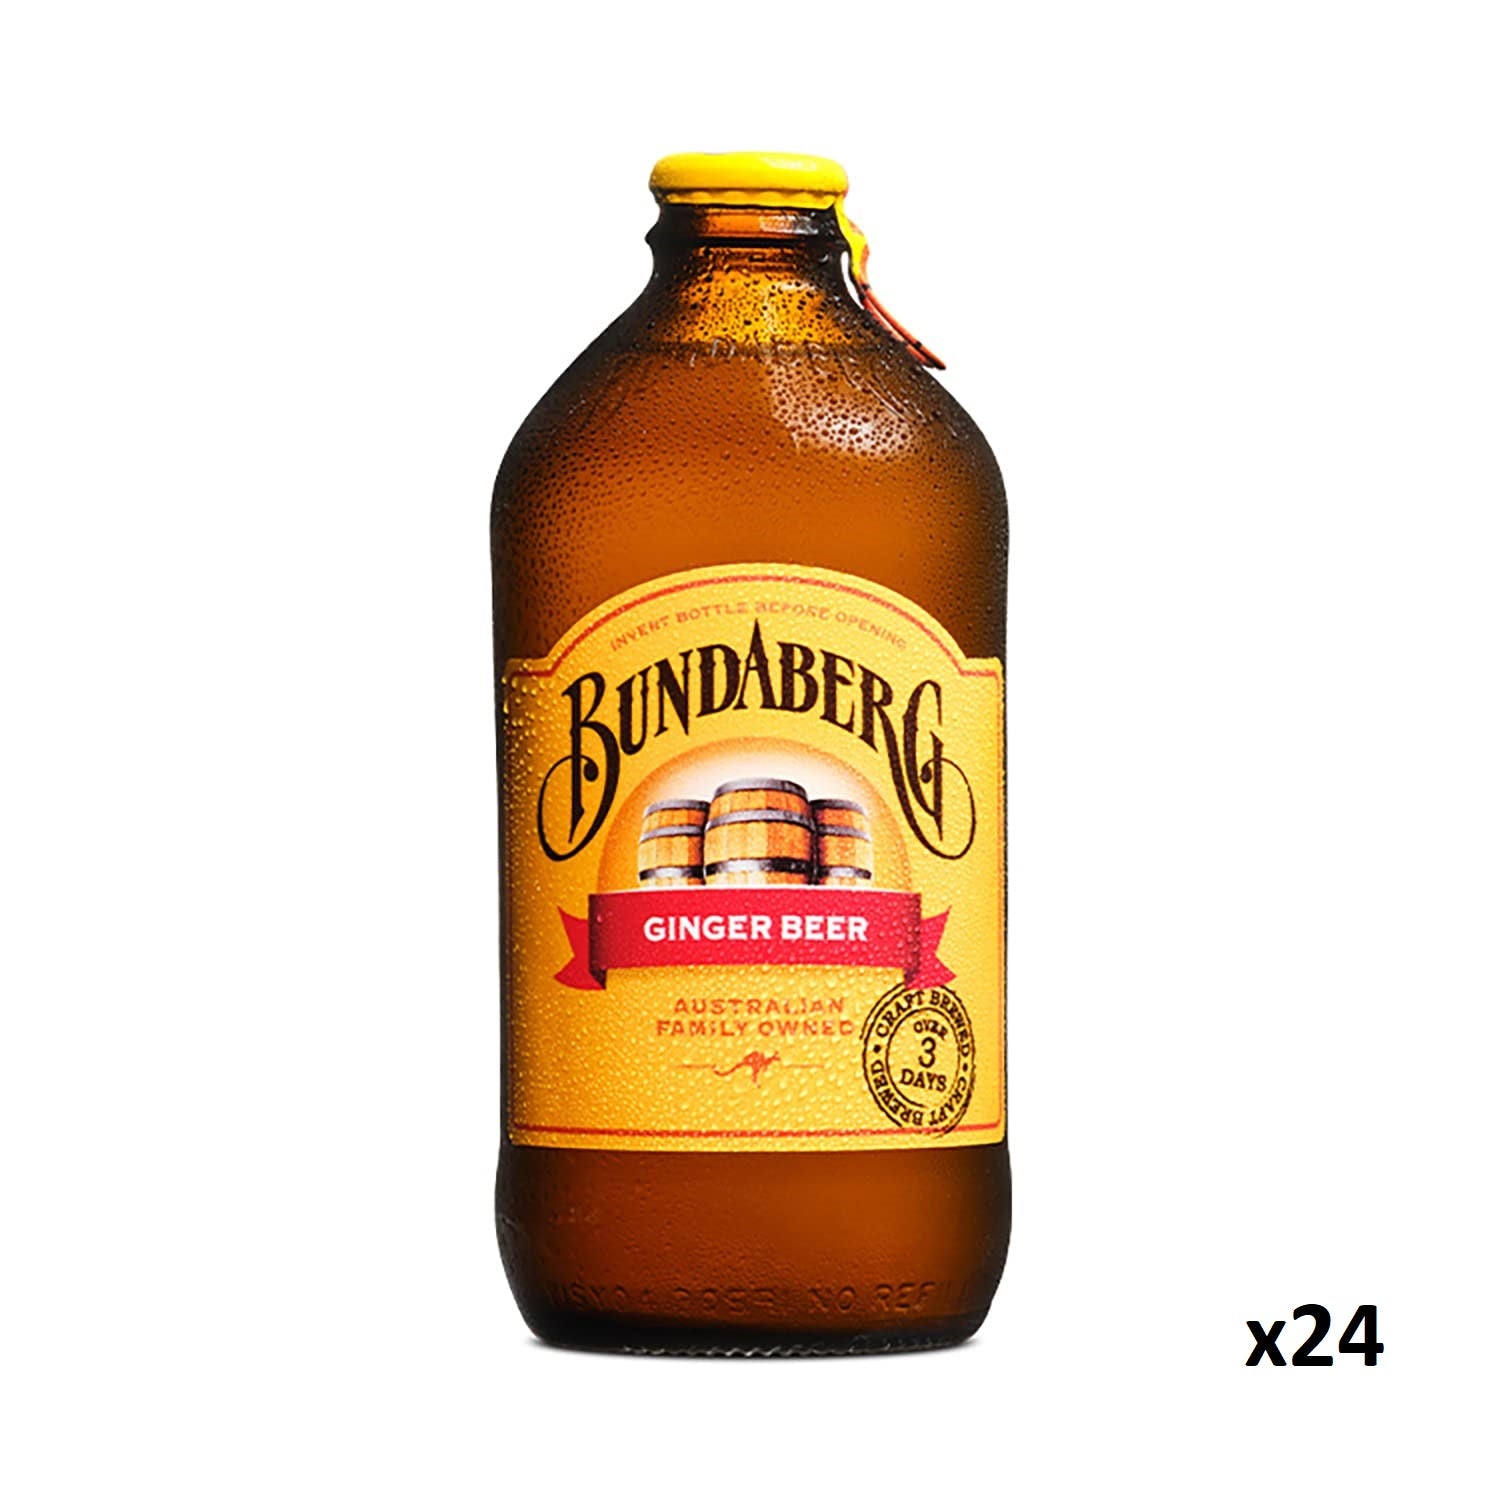 Bundaberg Ginger Beer 375ml x24